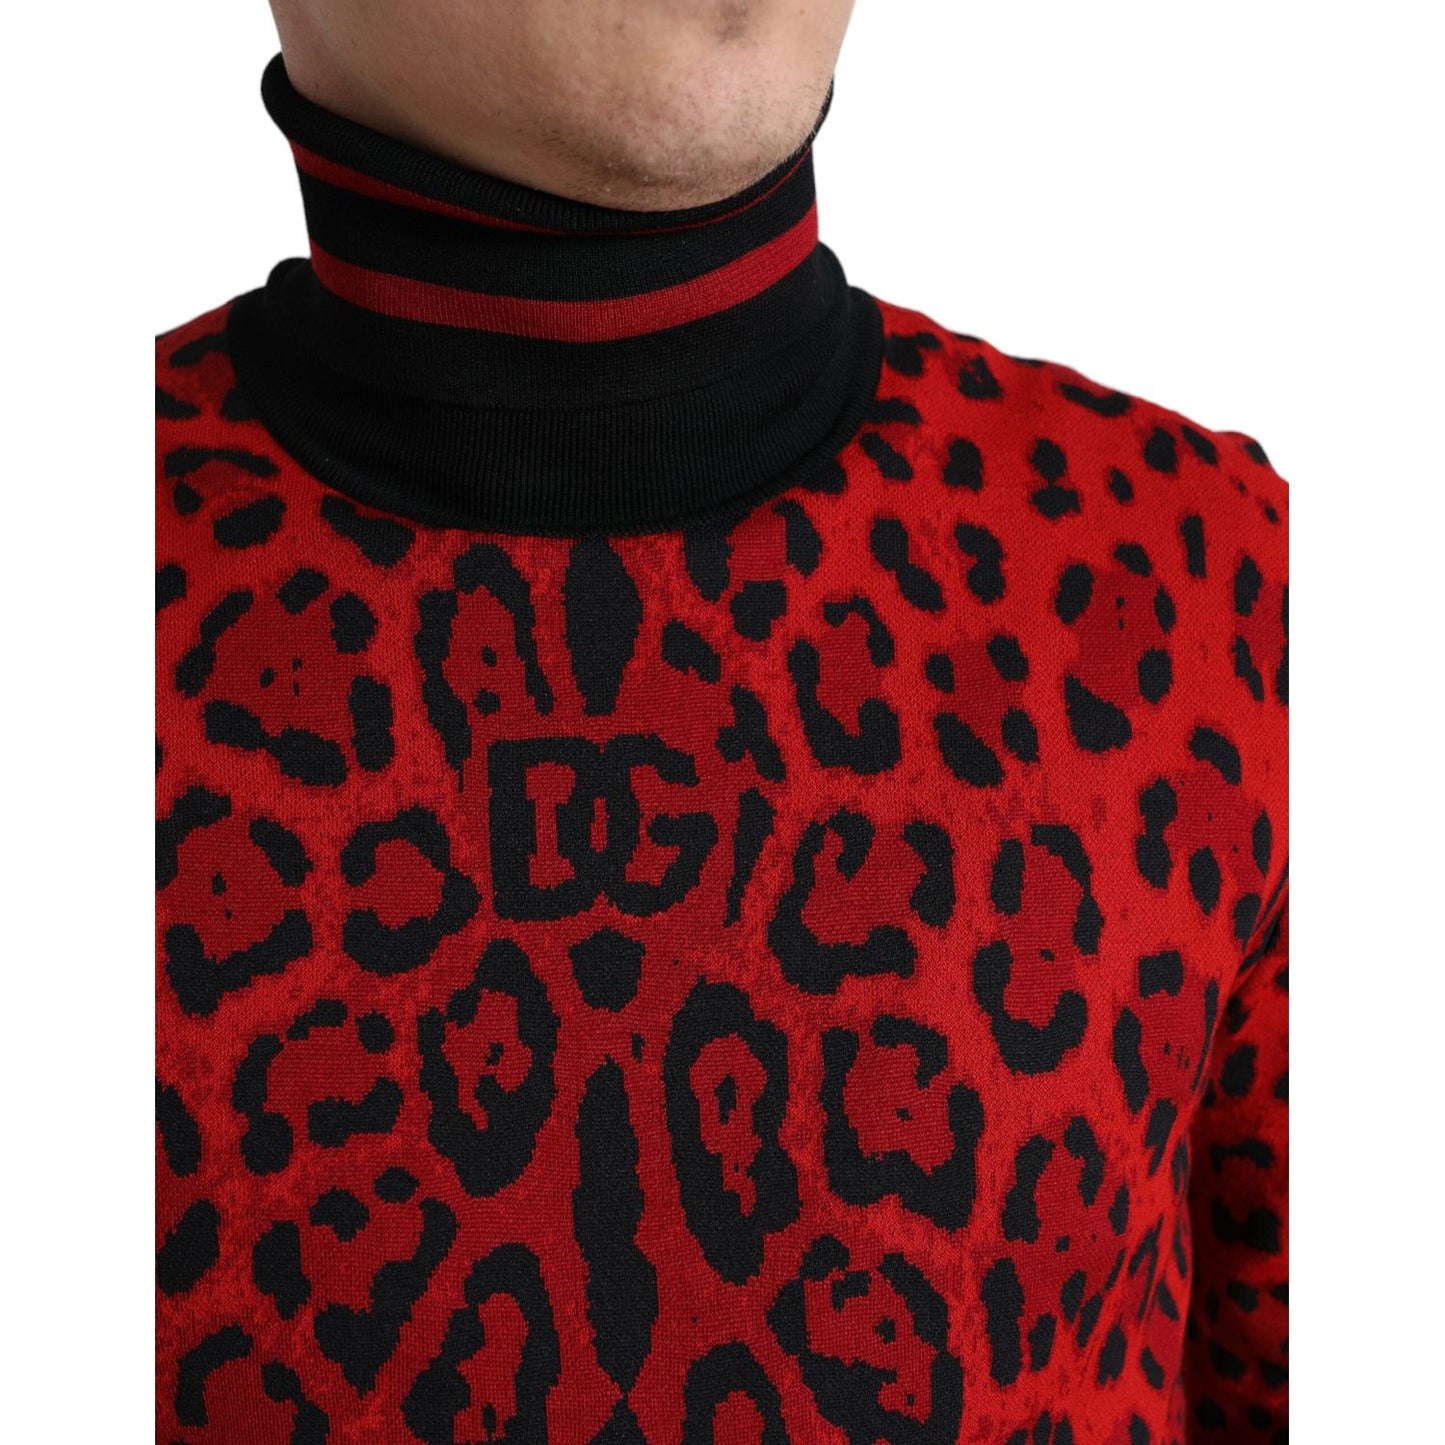 Dolce & Gabbana Elegant Leopard Turtleneck Sweater red-leopard-print-turtleneck-pullover-sweater